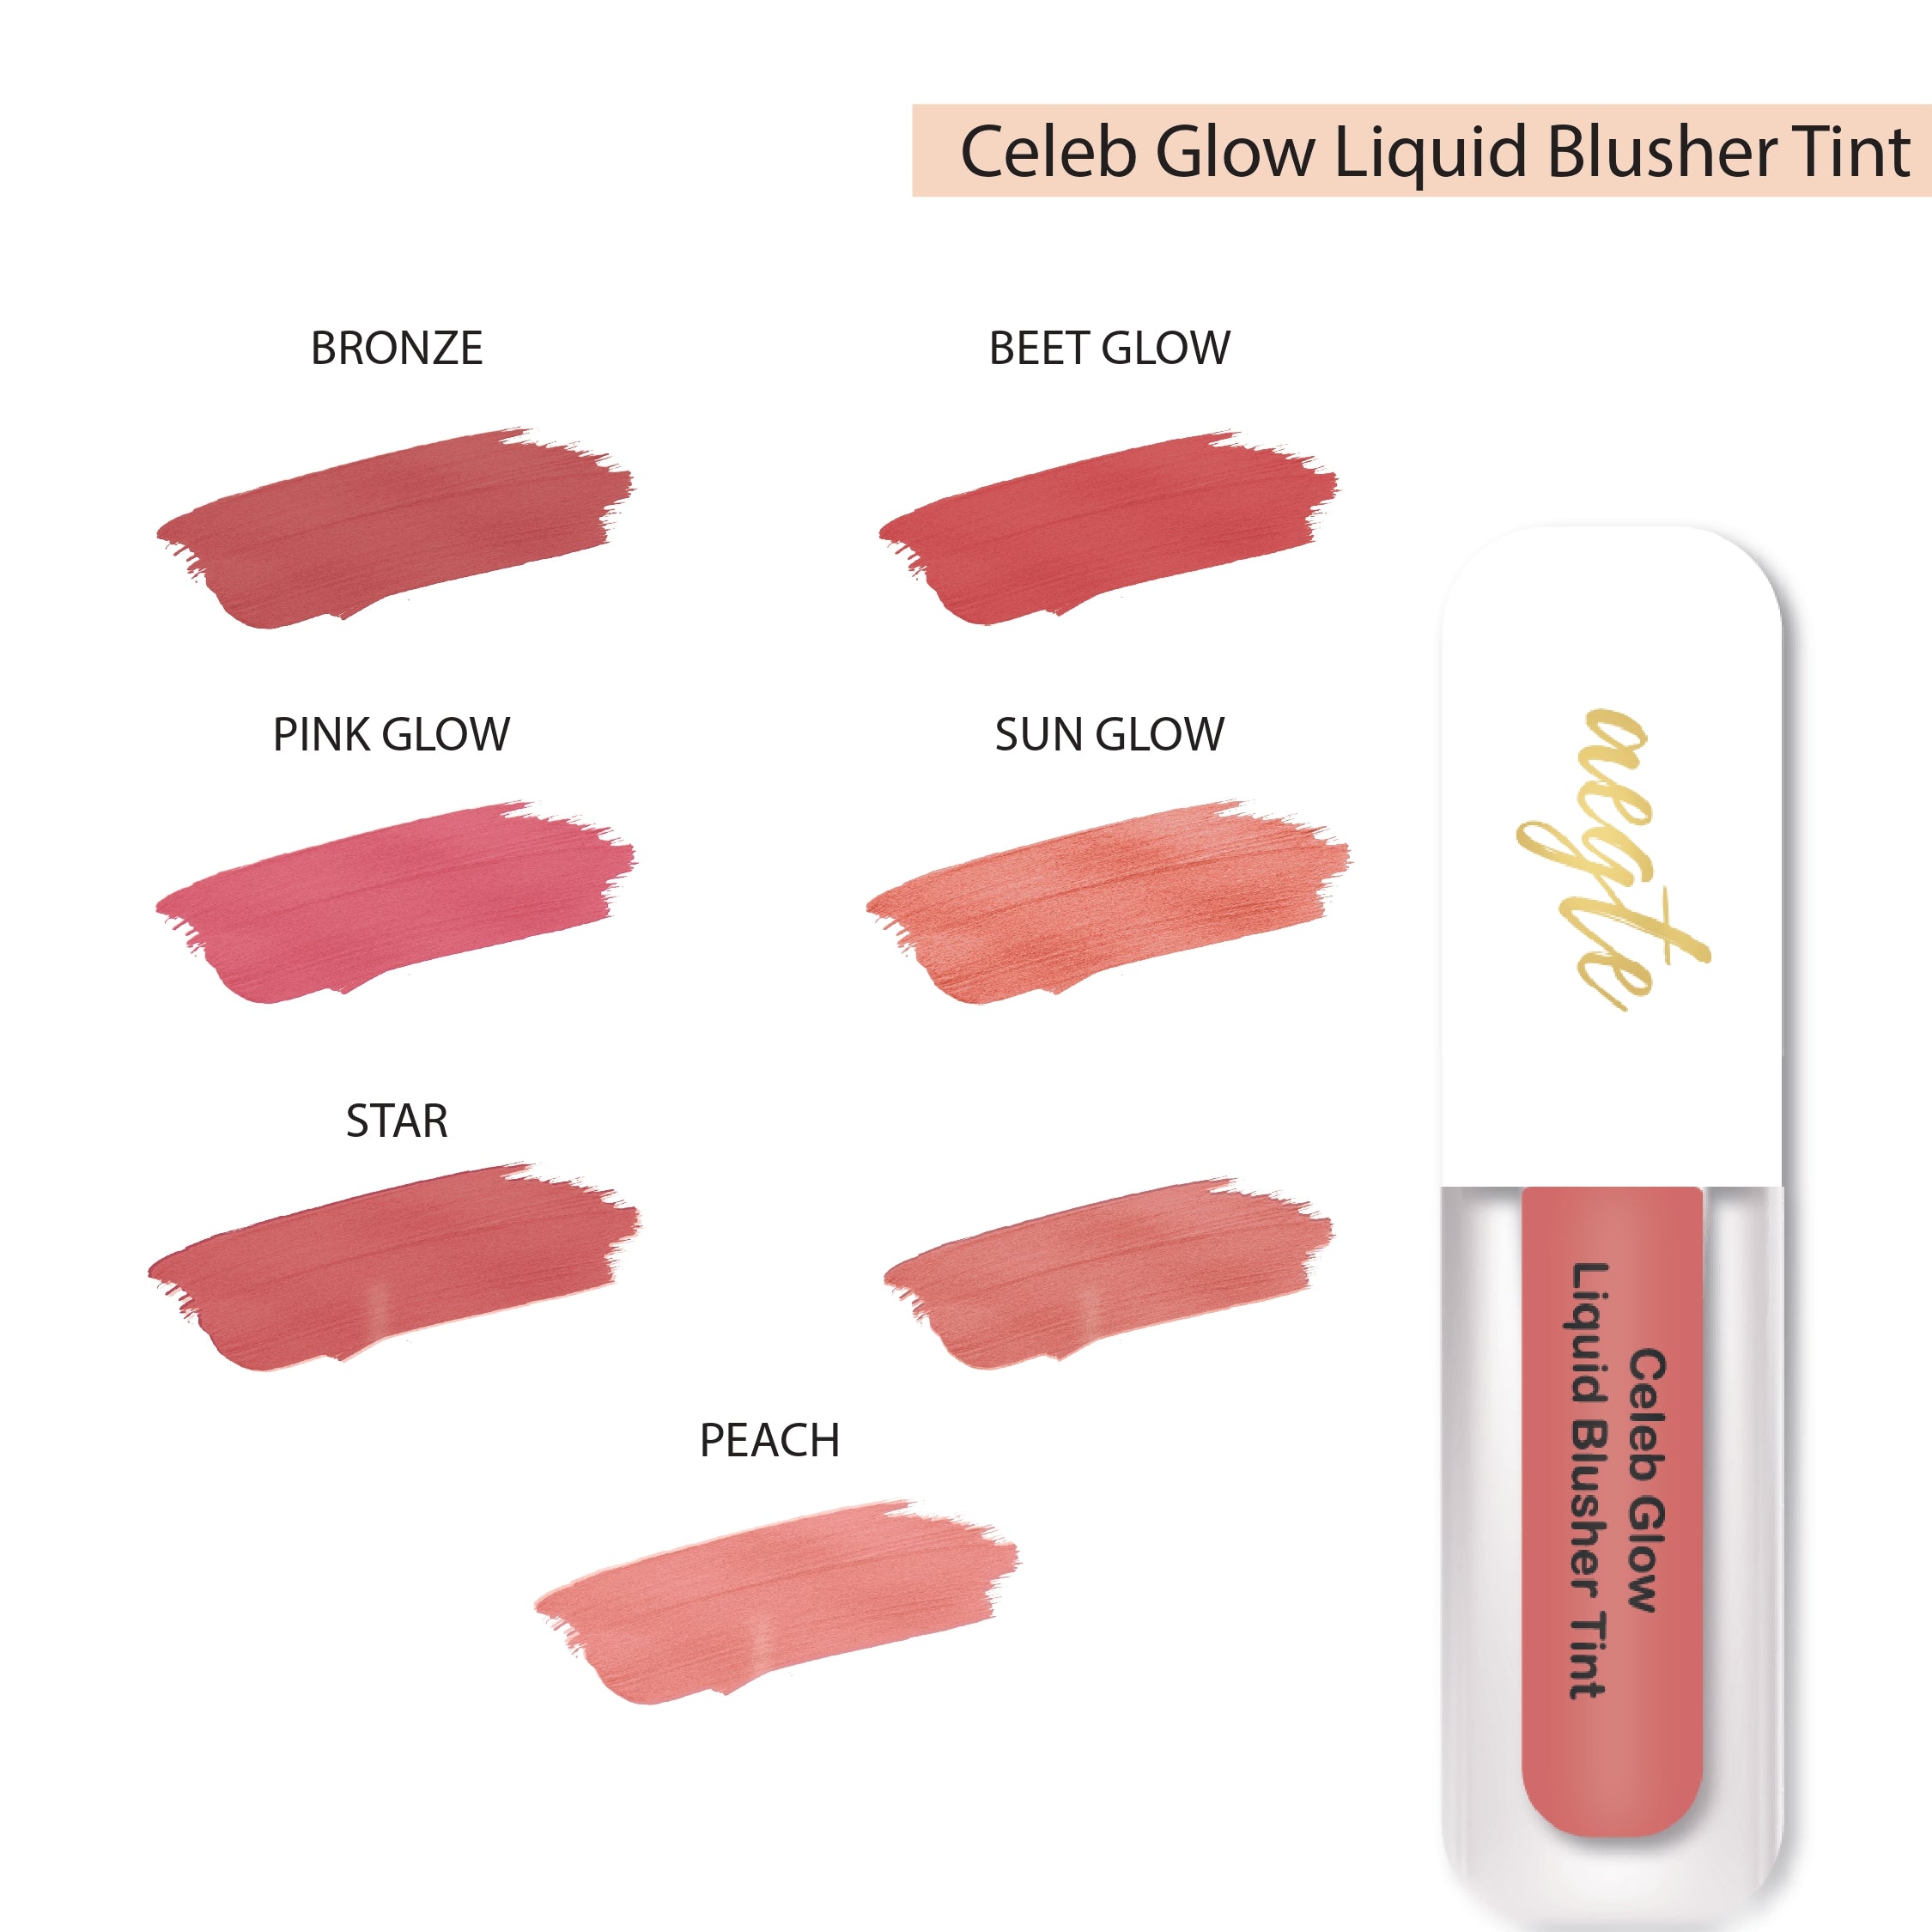 Aegte 3D Lumi Strobe Cream, Glass Skin Liquid HD Foundation, Celeb Glow Liquid Blusher Tint & HD Kajal